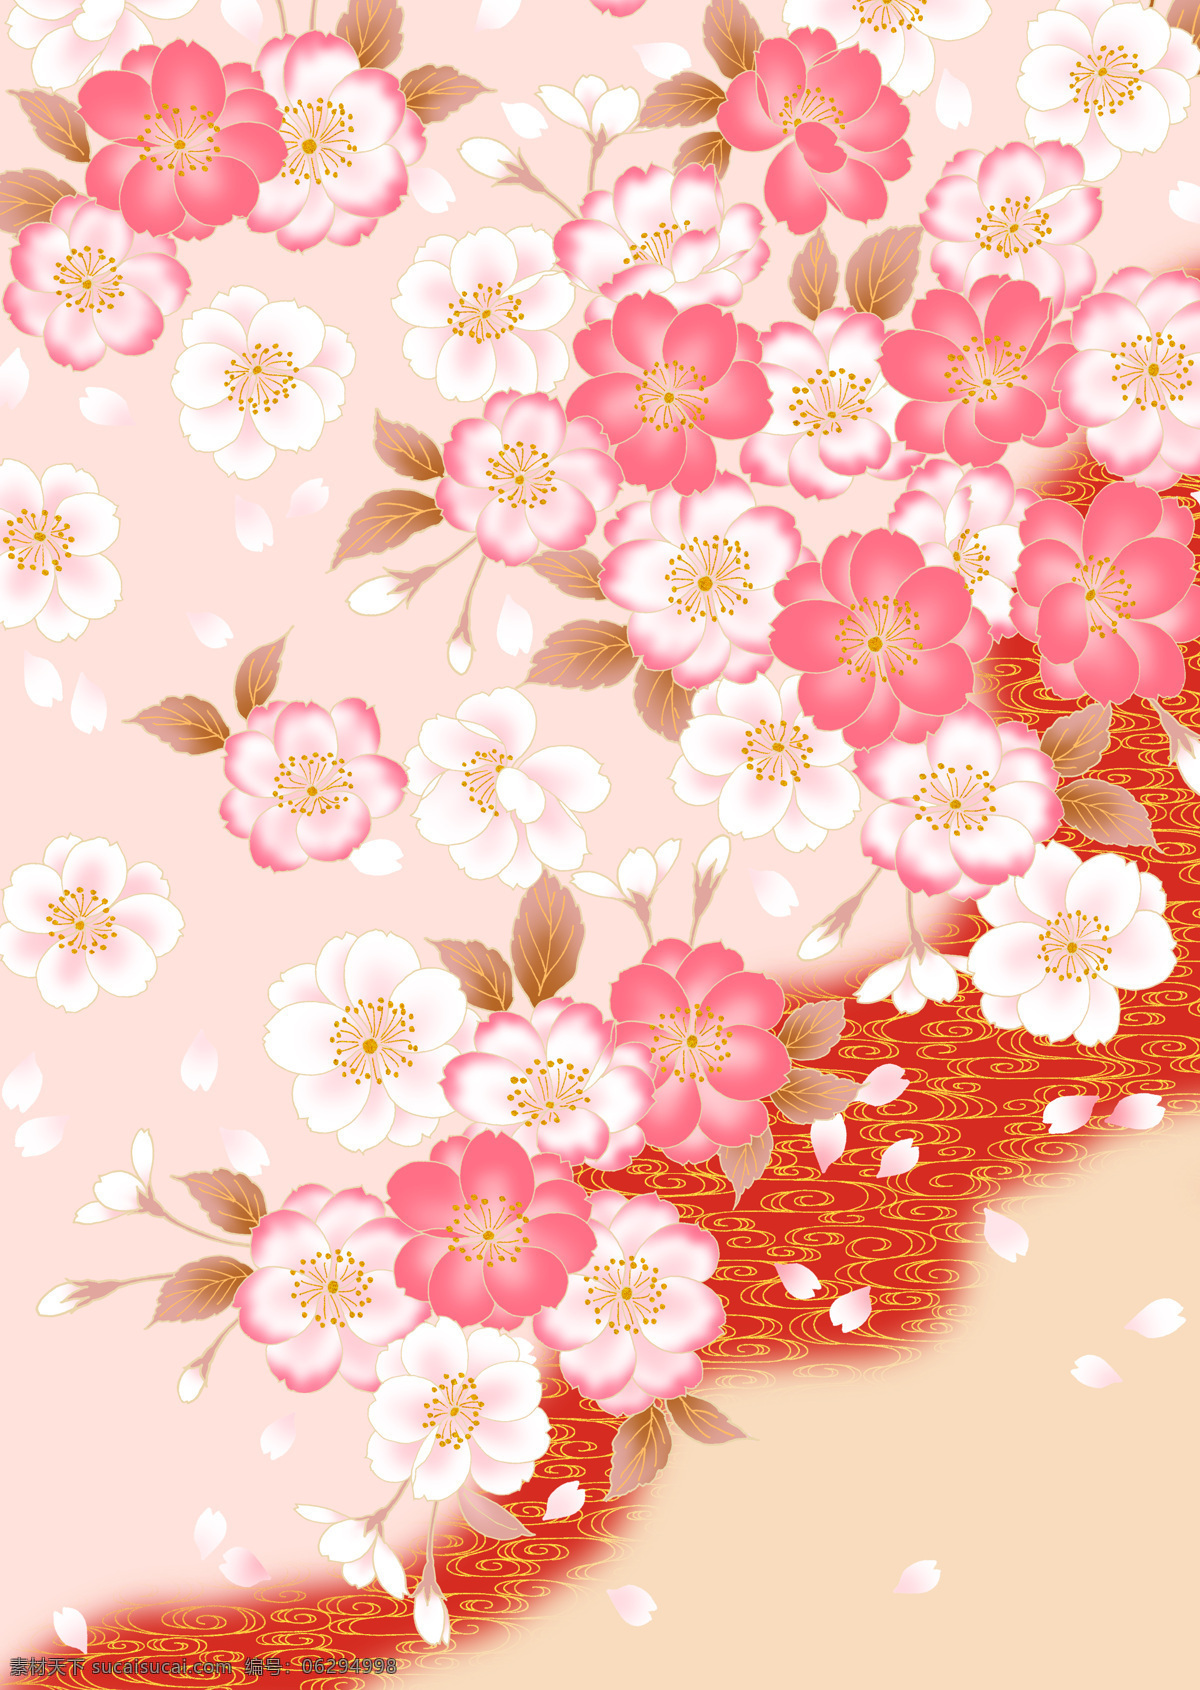 日本 风格 中 色彩 八重樱 花瓣 背景图 底纹边框 背景底纹 设计图库